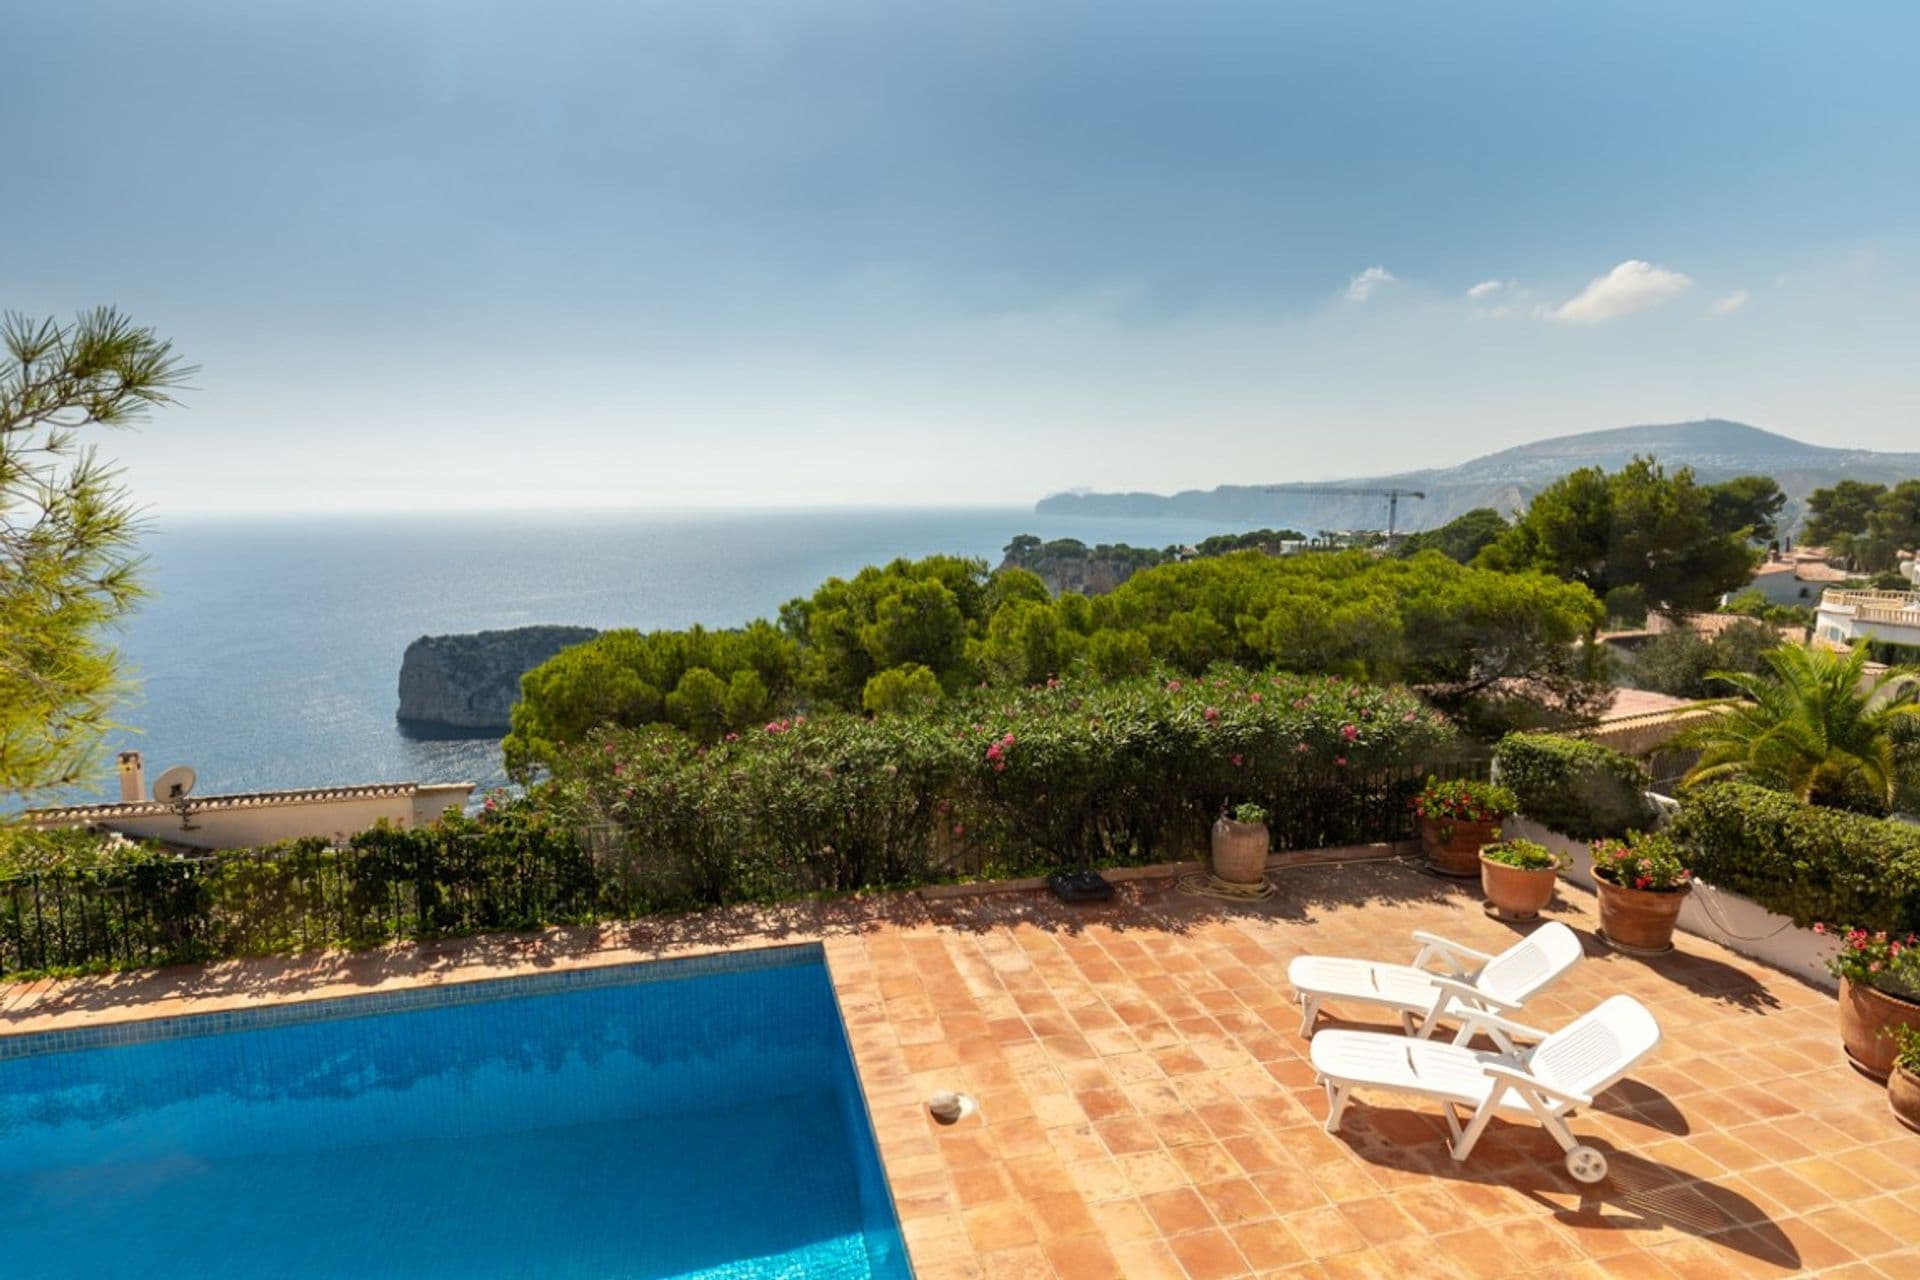 Rustic-style villa with sea views for sale in Ambolo, Javea.